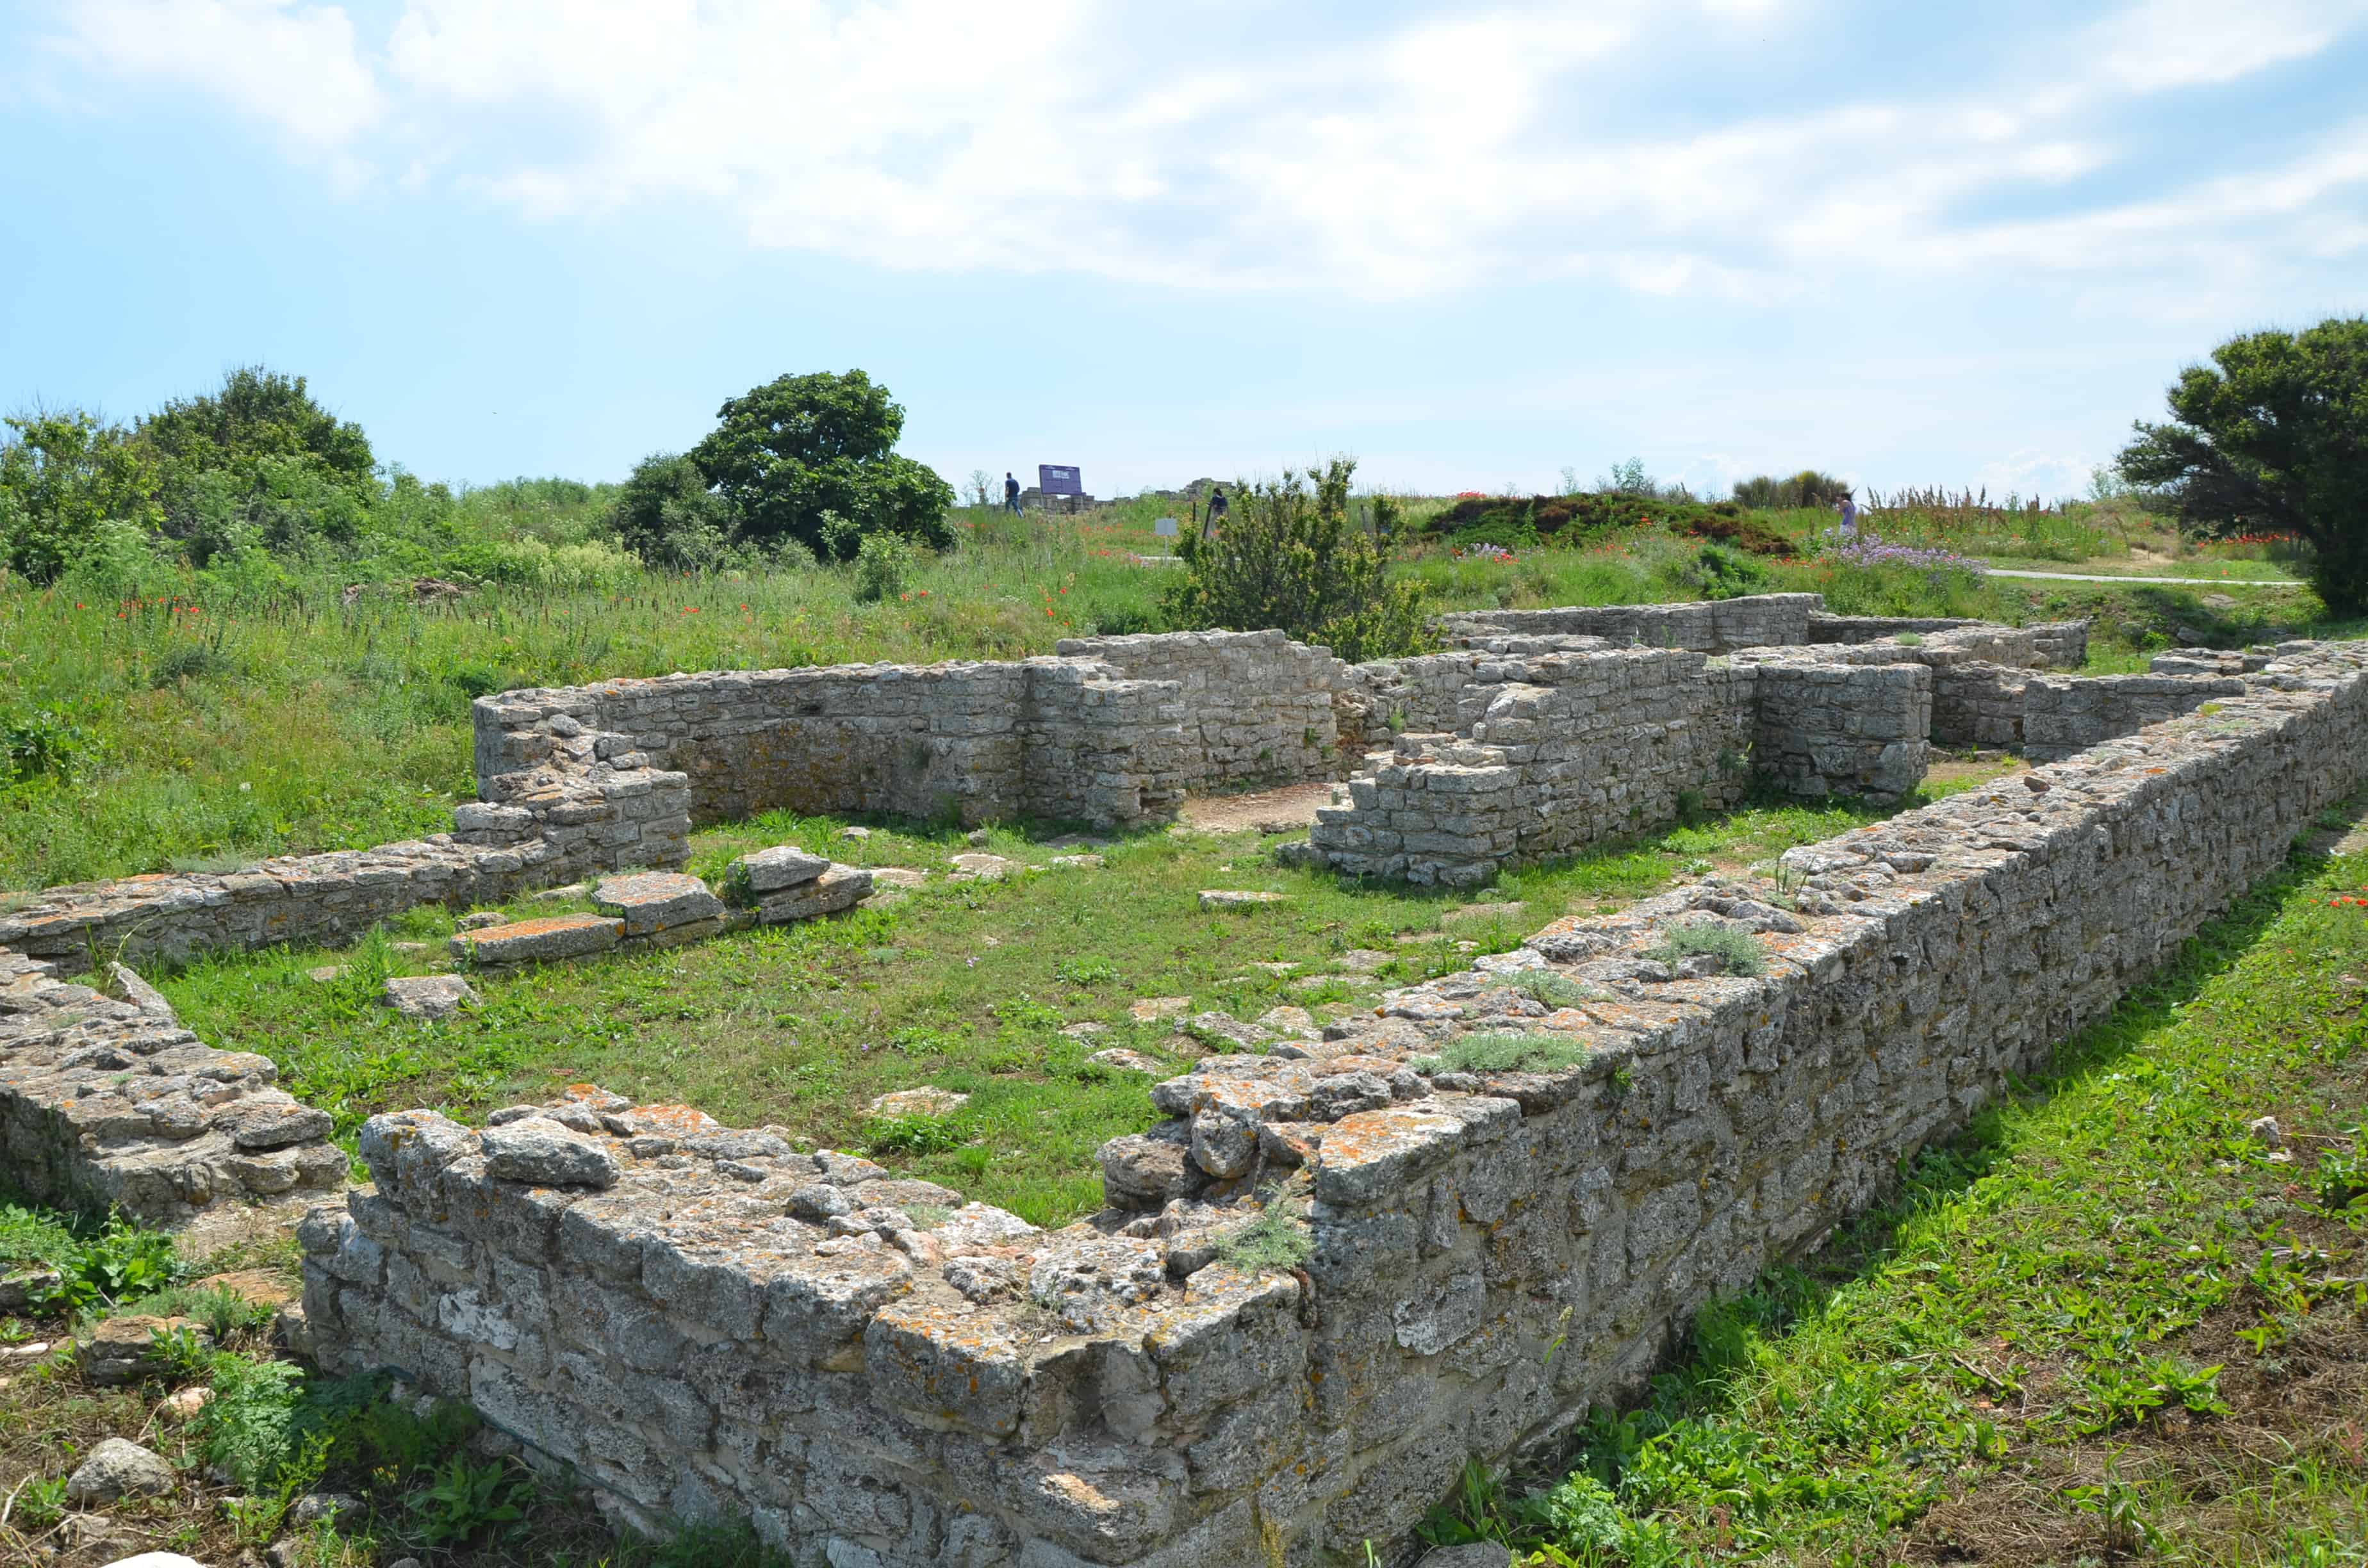 Roman bath at Kaliakra, Bulgaria